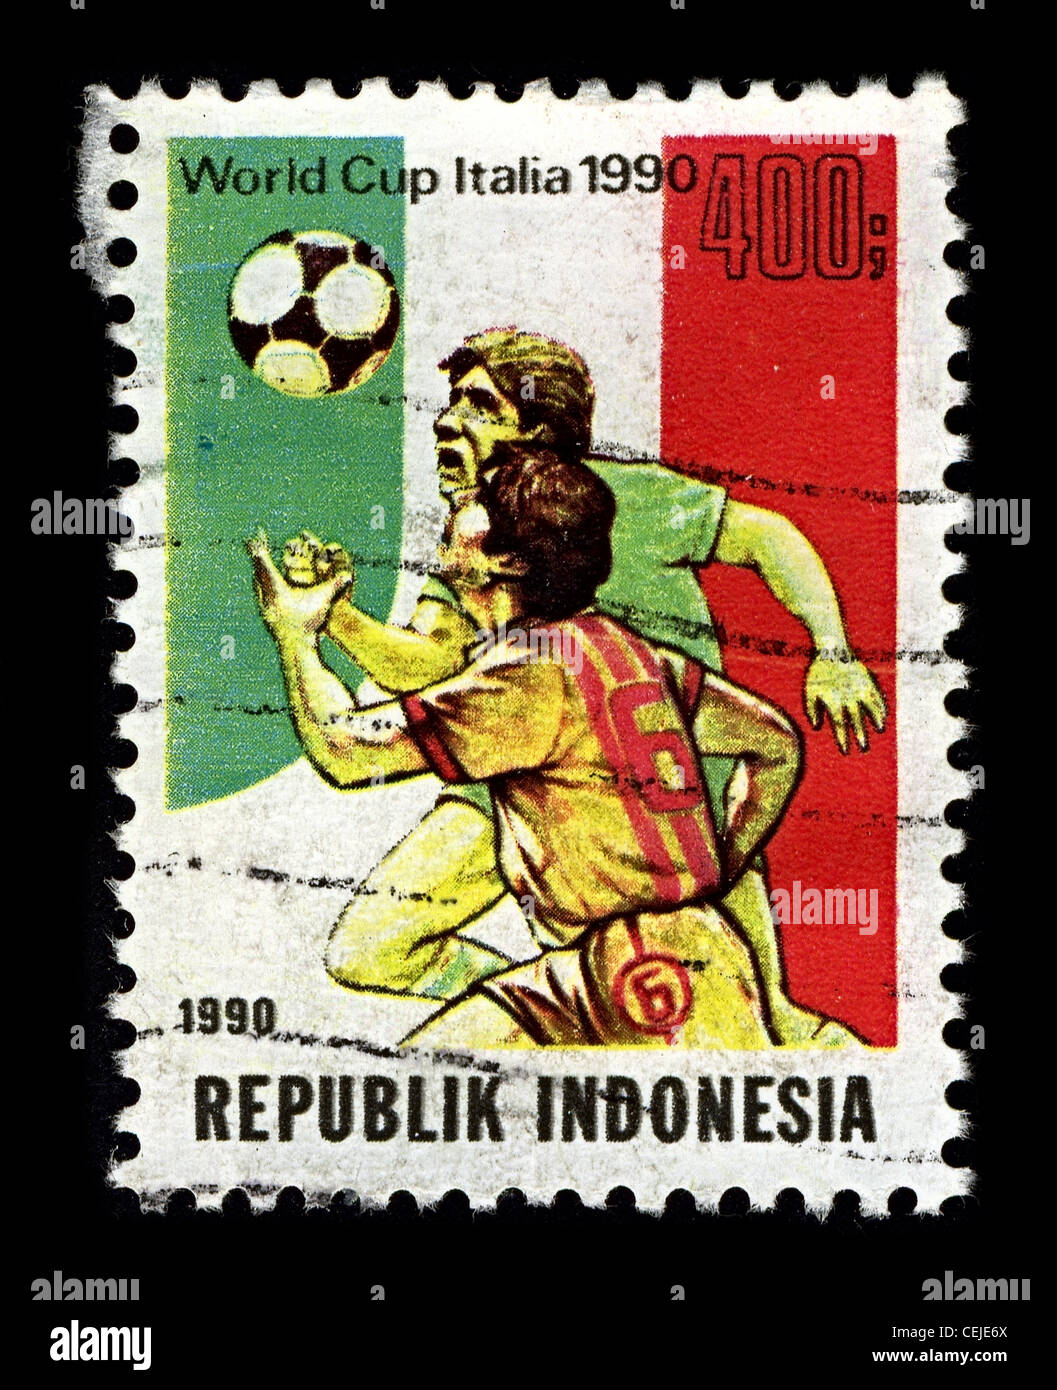 Indonesien-ca. 1990:A Stempel gedruckt in Indonesien zeigt Bild von der WM 1990 war die 14. FIFA World Cup, die alle vier Jahre stattfindenden internationalen Fußball World Championship Turnier circa 1990. Stockfoto